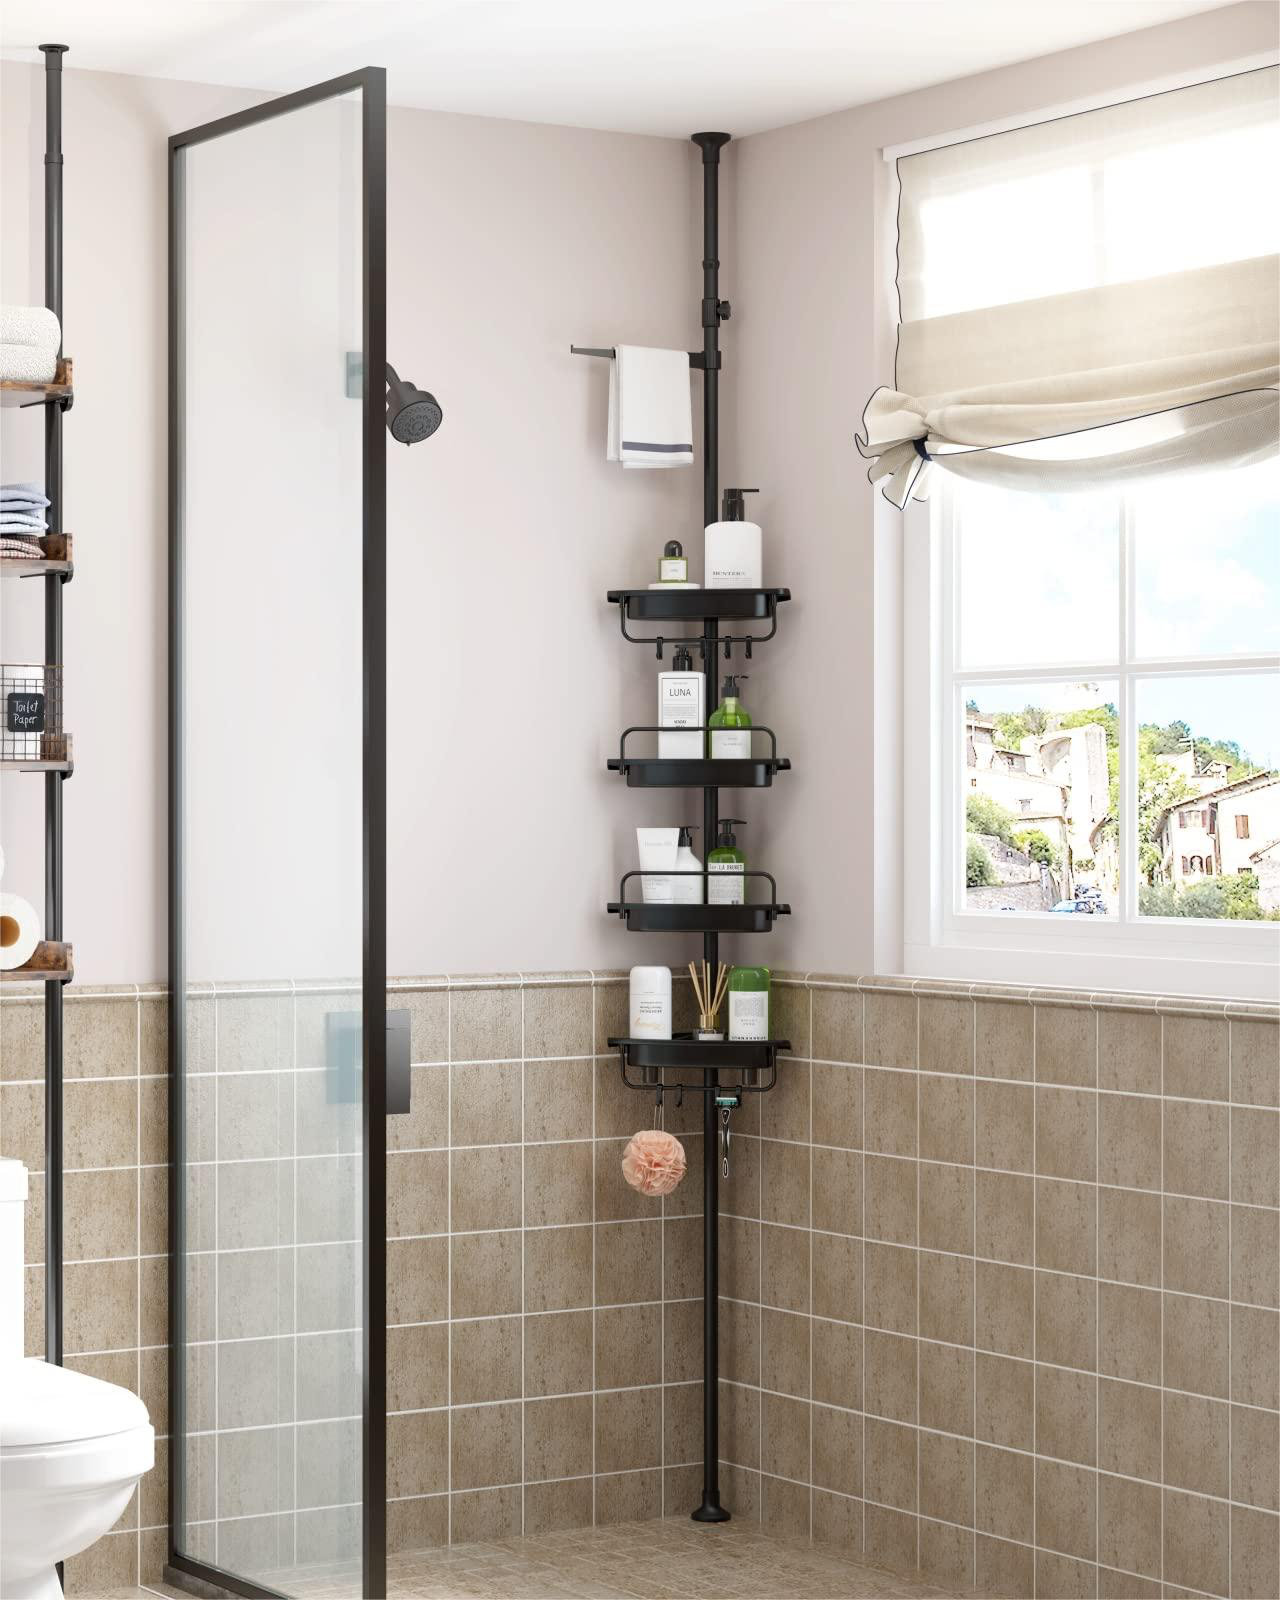 self-draining shower caddy shelf organizer sus304